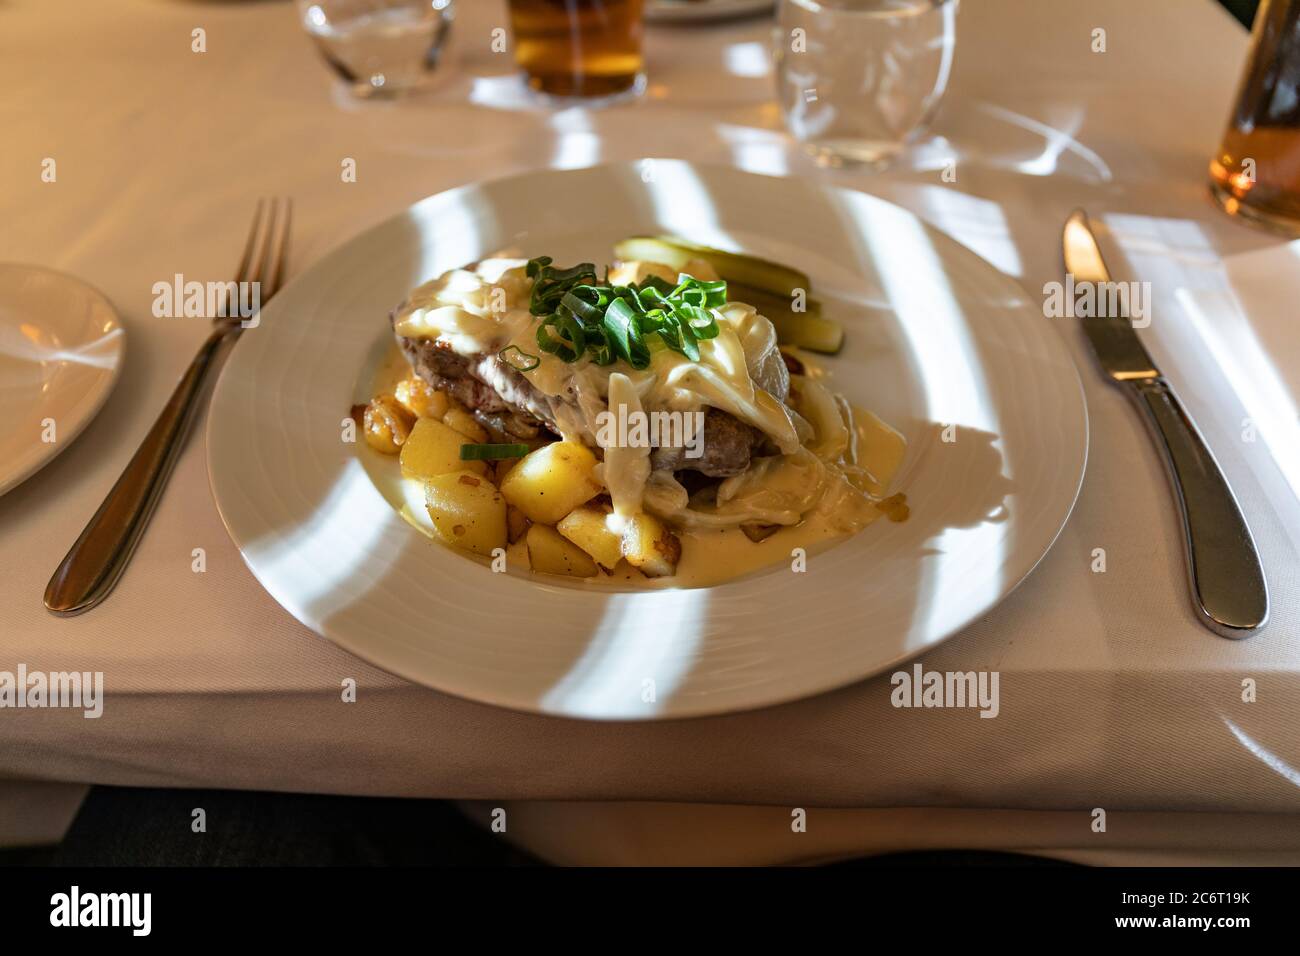 Steak de sirloin avec oignons crémés et pommes de terre poêlées, portion nommée d'après l'acteur Tauno Palo, dans le Restaurant Elite d'Helsinki, Finlande Banque D'Images